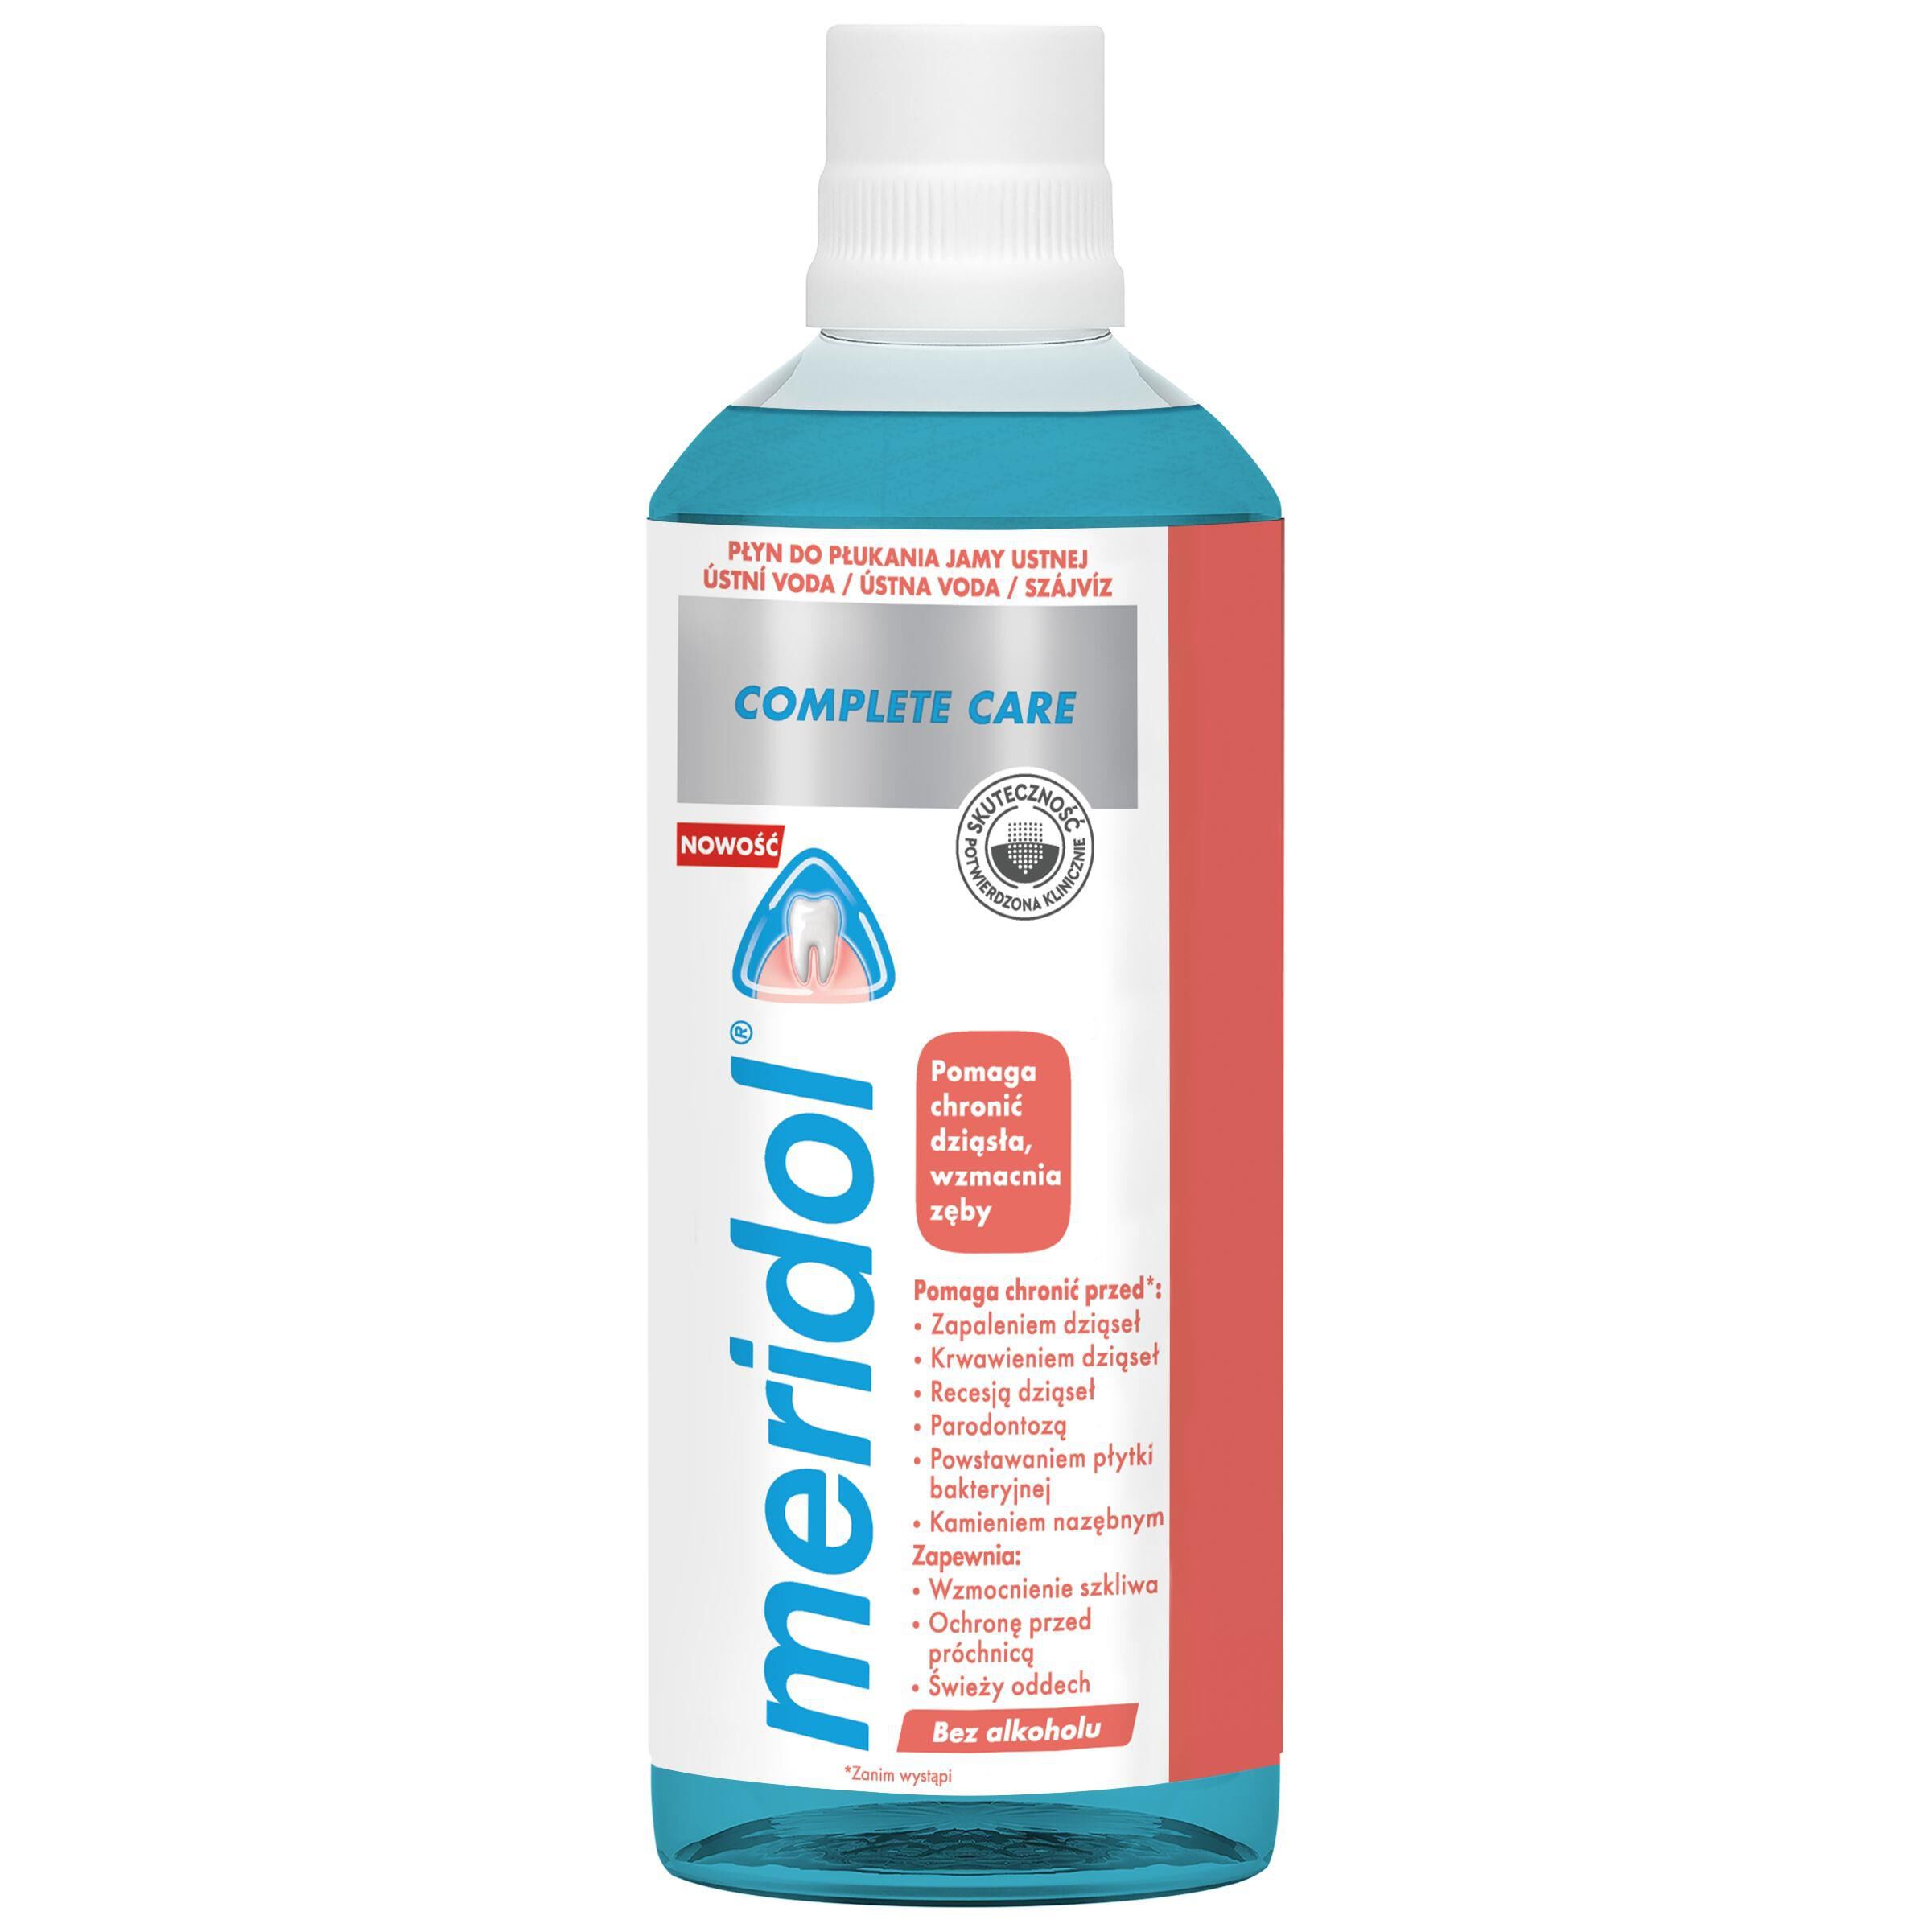 Meridol Complete Care жидкость для полоскания рта, 400 мл